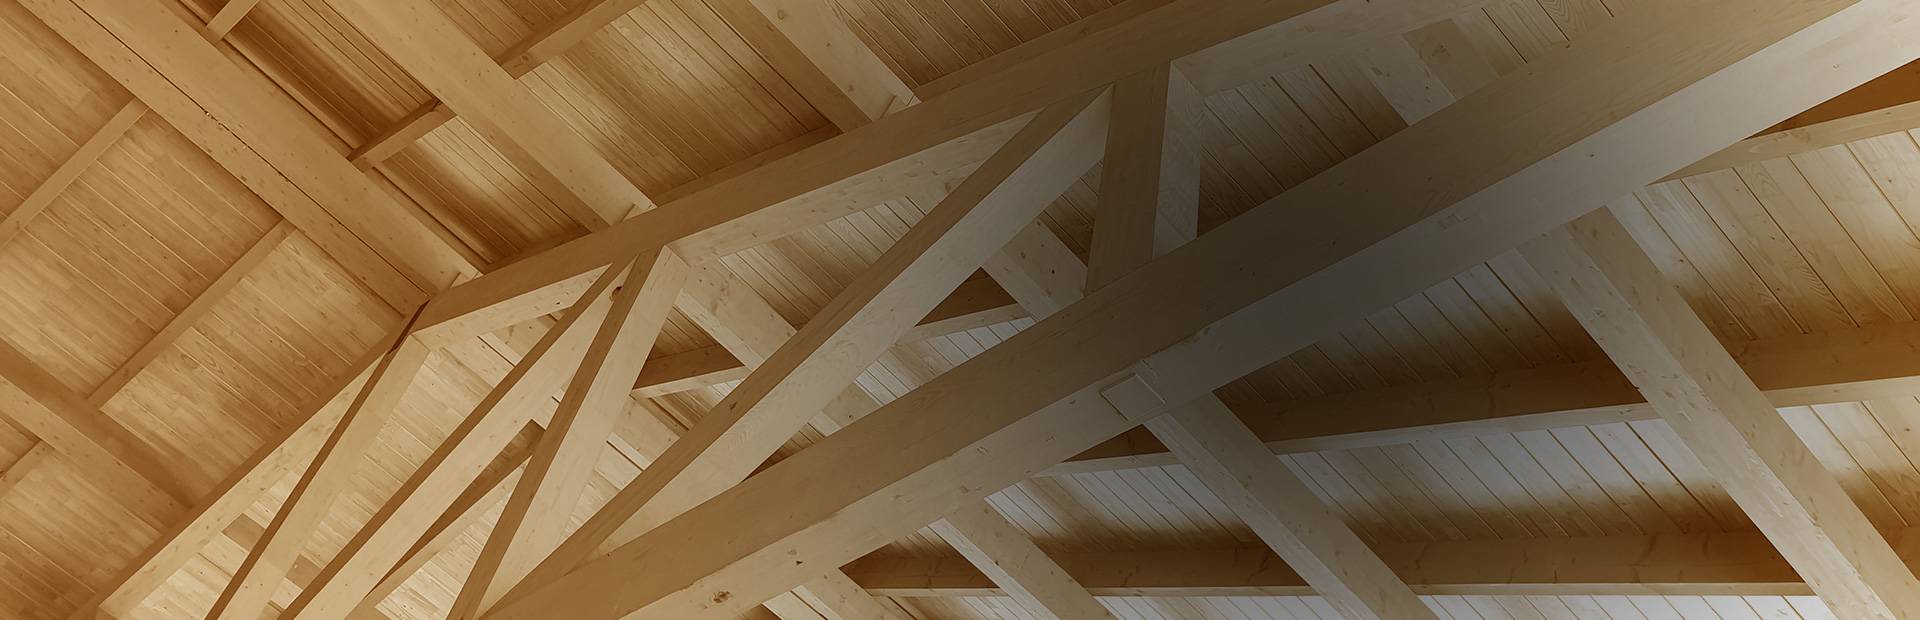 Drewniany dach